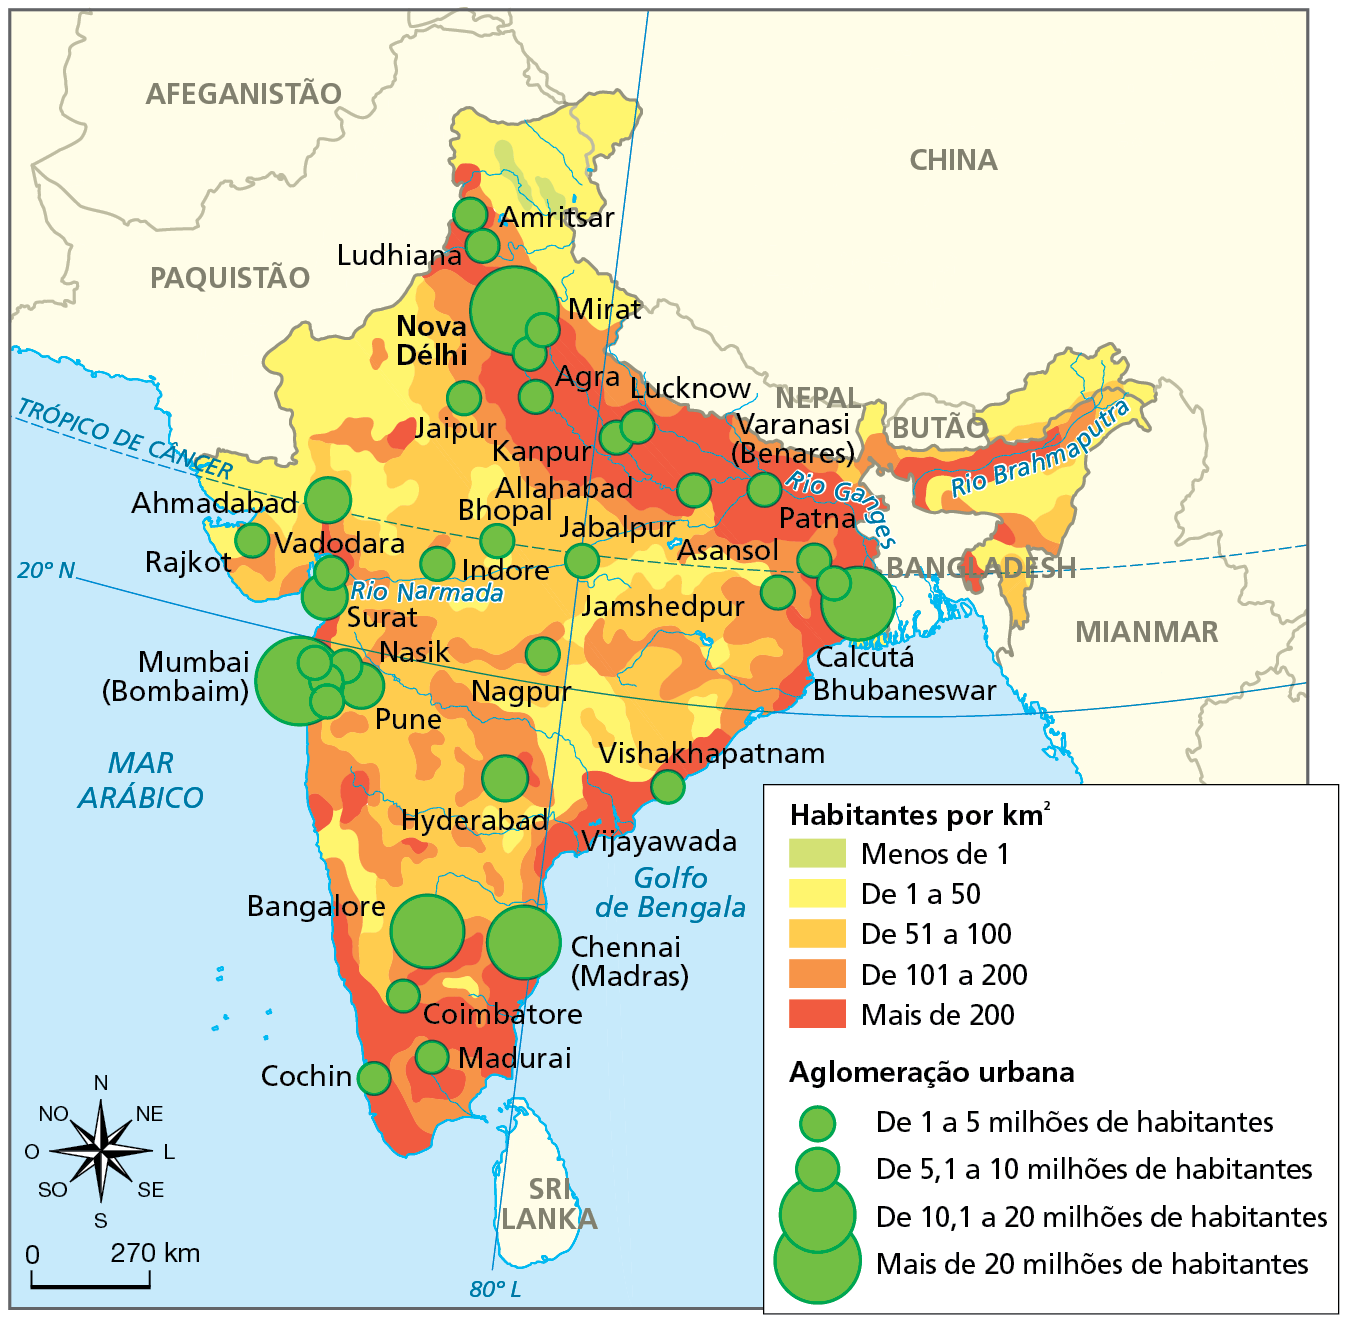 Mapa. Índia: densidade demográfica e aglomerações urbanas, de 2019. Mapa do território da Índia demarcando as áreas com diferentes níveis de densidade demográfica, em habitantes por quilômetro quadrado, destacadas em tonalidades de cor que variam do verde (áreas com densidade de menos de 1), para o vermelho (áreas com densidade de mais de 200). O mapa também localiza as principais aglomerações de habitantes por meio de círculos proporcionais que variam em ordem crescente de 1,0 a 5,0 milhões até mais de 20 milhões habitantes.
Habitantes por quilômetro quadrado:
Menos de 1 habitante (verde): porção norte, nos arredores de Amrifscar. 
De 1 a 50 habitantes (amarelo): faixas nos extremos norte, nordeste e noroeste, além de porções no centro-leste e na costa oeste.  
De 51 a 100 habitantes (laranja claro): área no centro e sul. 
De 101 a 200 habitantes (laranja escuro): pontos no centro, sul, faixa leste e oeste. 
Mais de 200 habitantes (vermelho): concentrações na região sul, na costa leste e, principalmente, no norte, nas áreas próximas ao Rio Ganges. 
Aglomerações urbanas:
De 1 a 5 milhões habitantes: concentrações distribuídas por todo o território, destancando as seguintes localidades: Vishakhapatnam, Asansol, Varanasi, Lucknow, Agra, Jaipur, Amrifscar, Madurai, Coimbatore, Cochim. 
De 5,1 a 10 milhões de habitantes: concentrações na costa oeste e na parte central, destacando Surat, Ahmadabad, Pune. 
De 10,1 a 20 milhões de habitantes: concentrações no centro-sul e no extremo nordeste, destacando Chennai (Madras), Bangalore e Calcutá.
Mais de 20 milhões de habitantes: concentrações na costa oeste, em Mumbai (Bombaim), e norte, em Nova Délhi.
Na parte de baixo, à esquerda, rosa dos ventos e escala de 0 a 270 quilômetros.